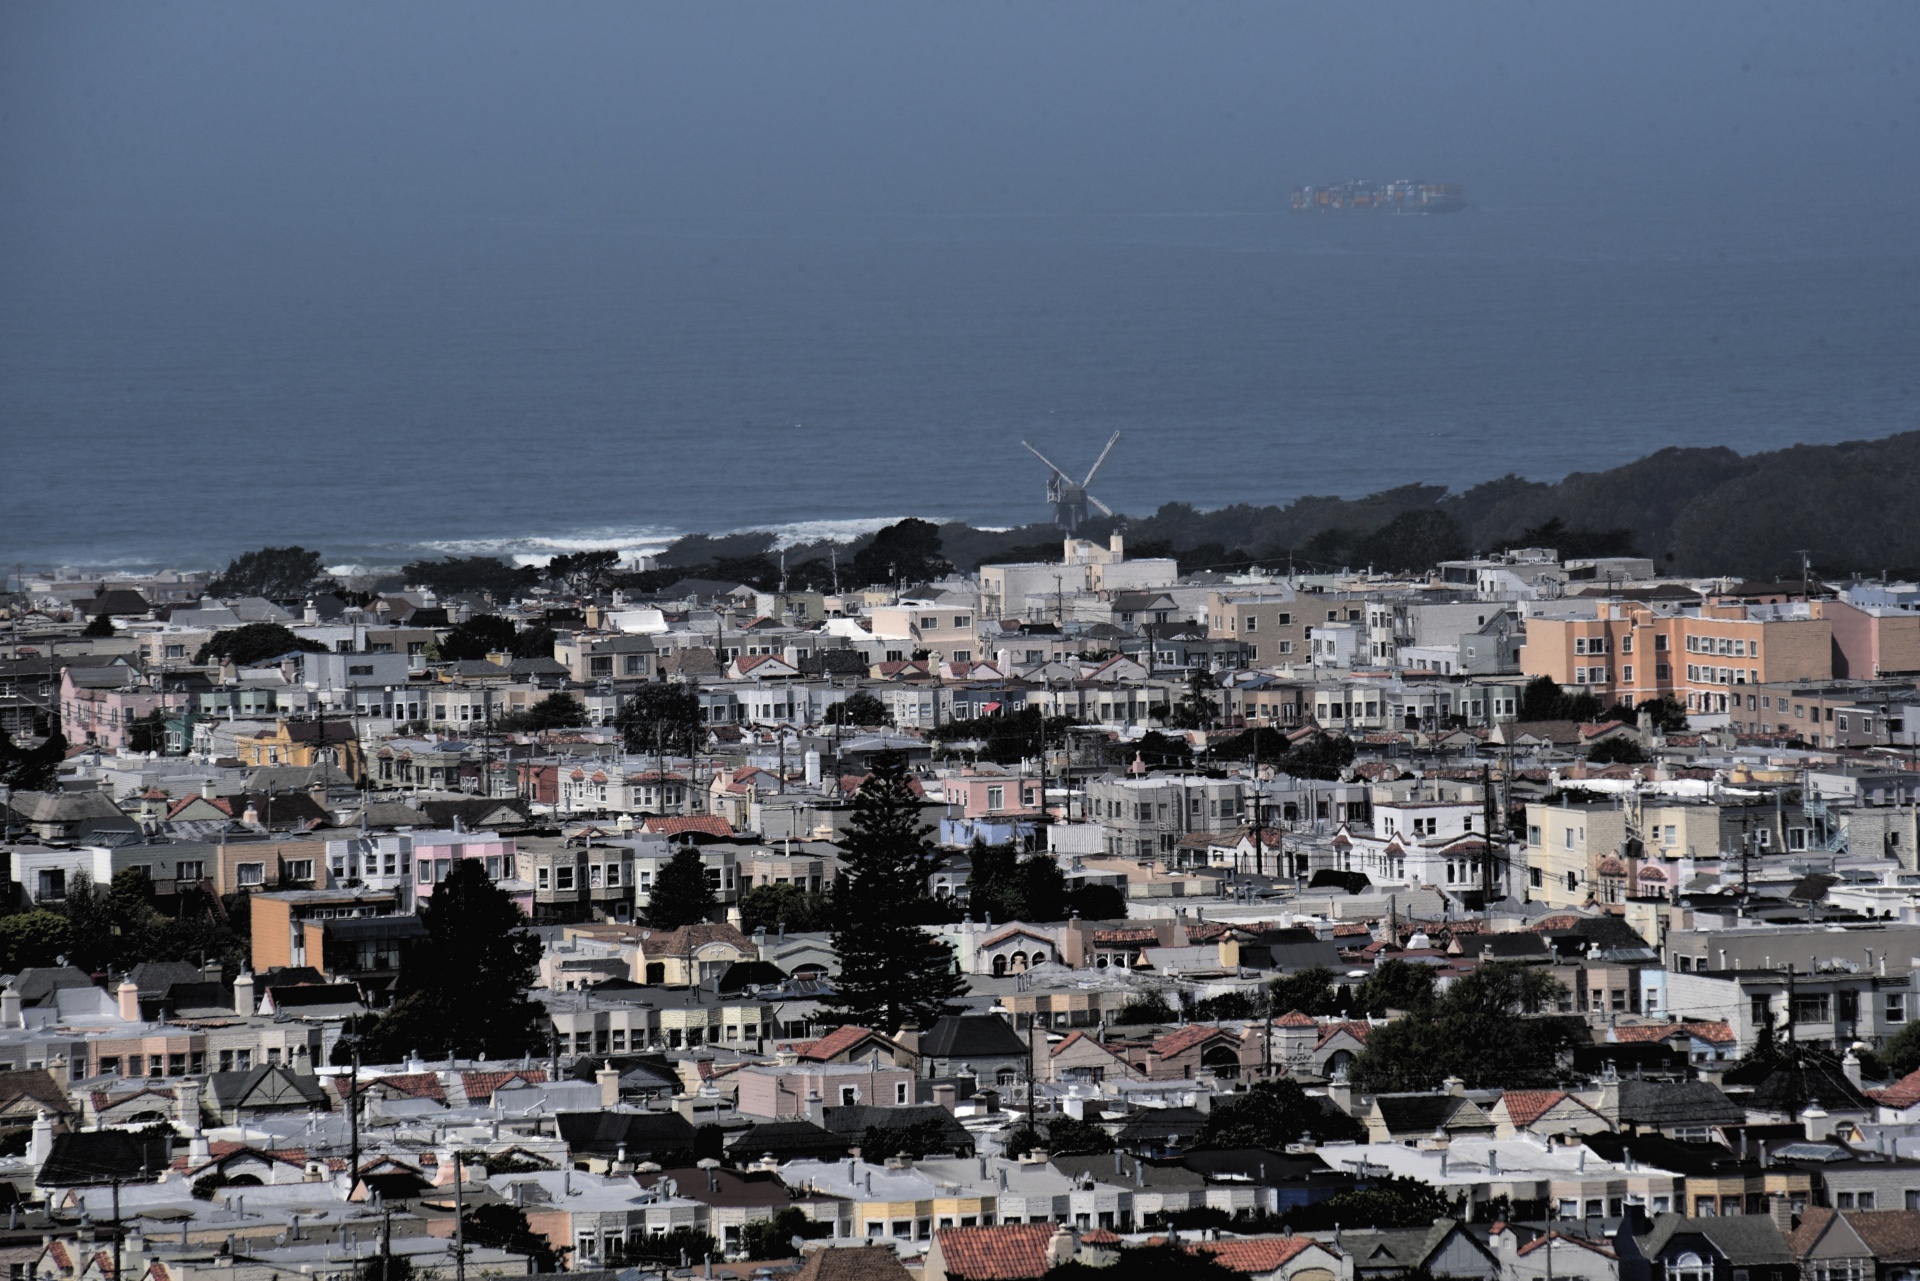 San Francisco City View